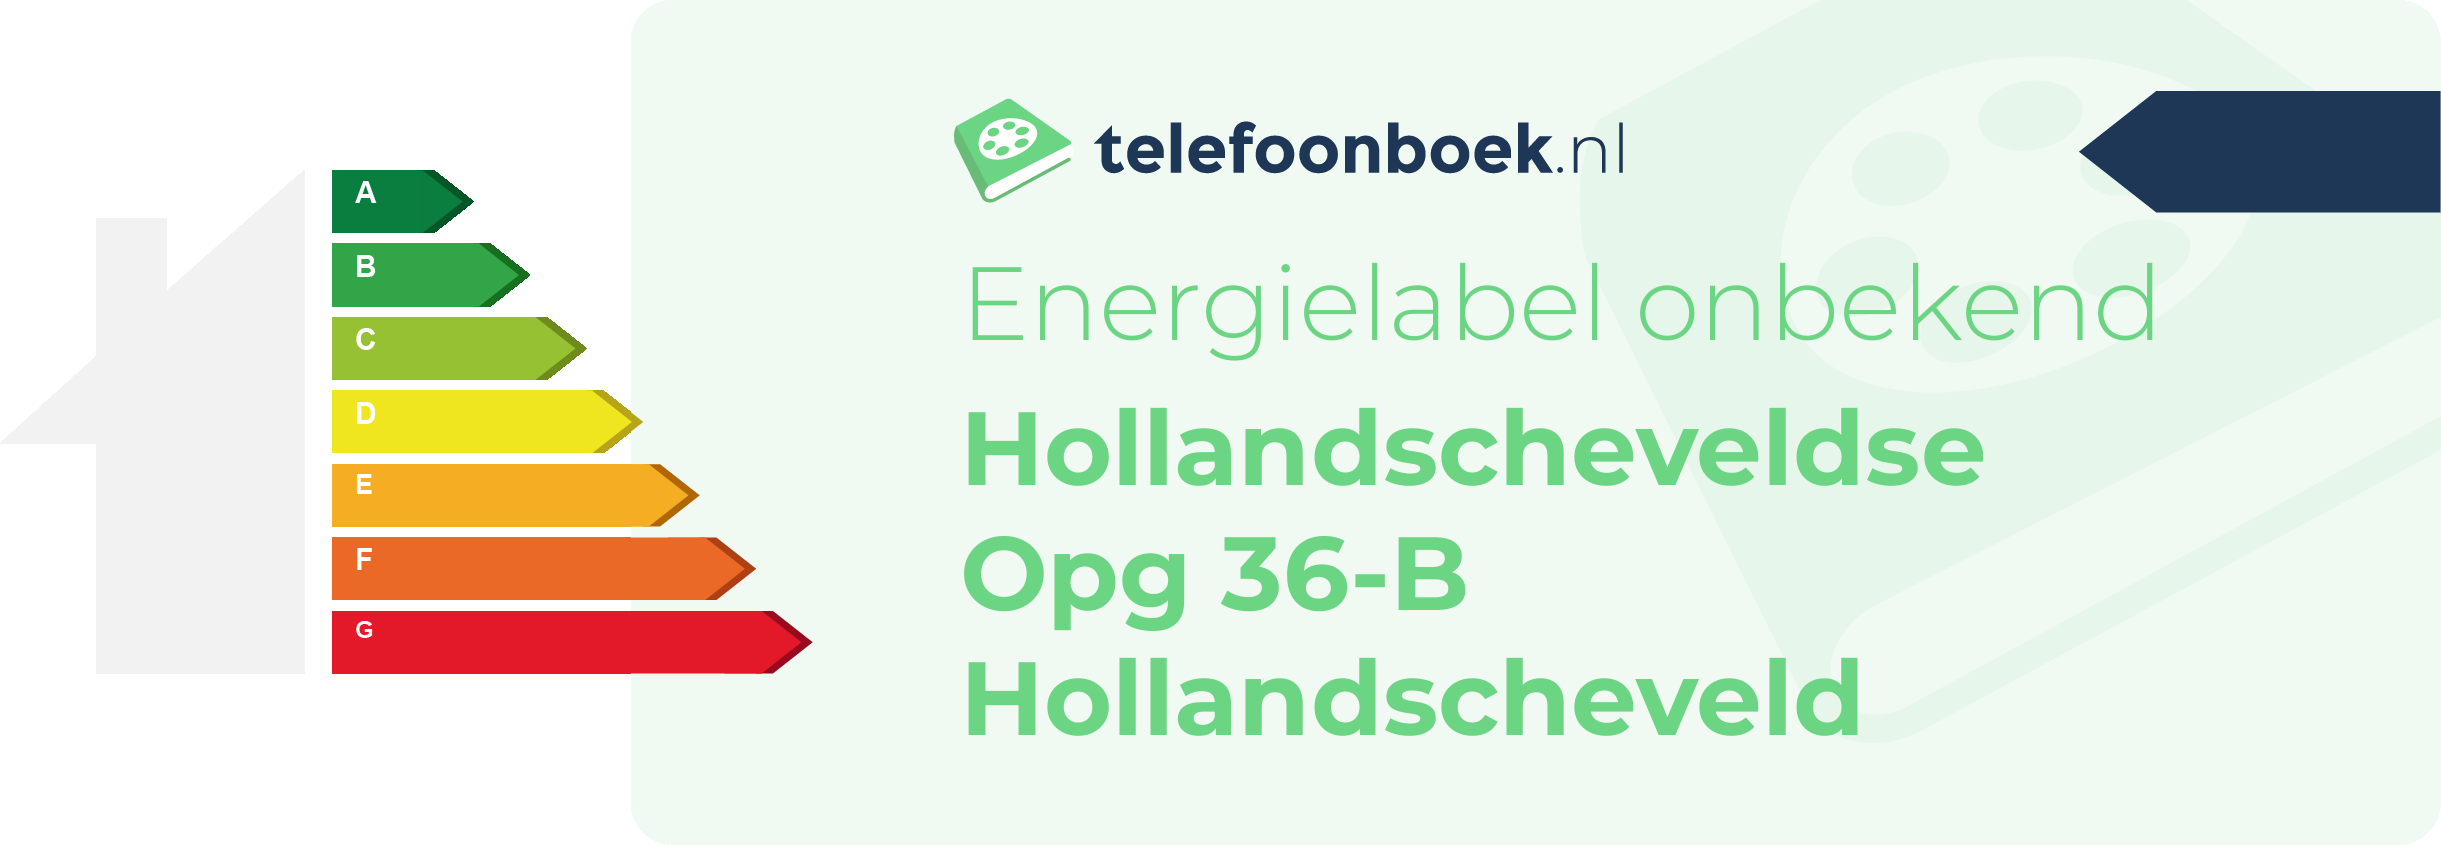 Energielabel Hollandscheveldse Opg 36-B Hollandscheveld